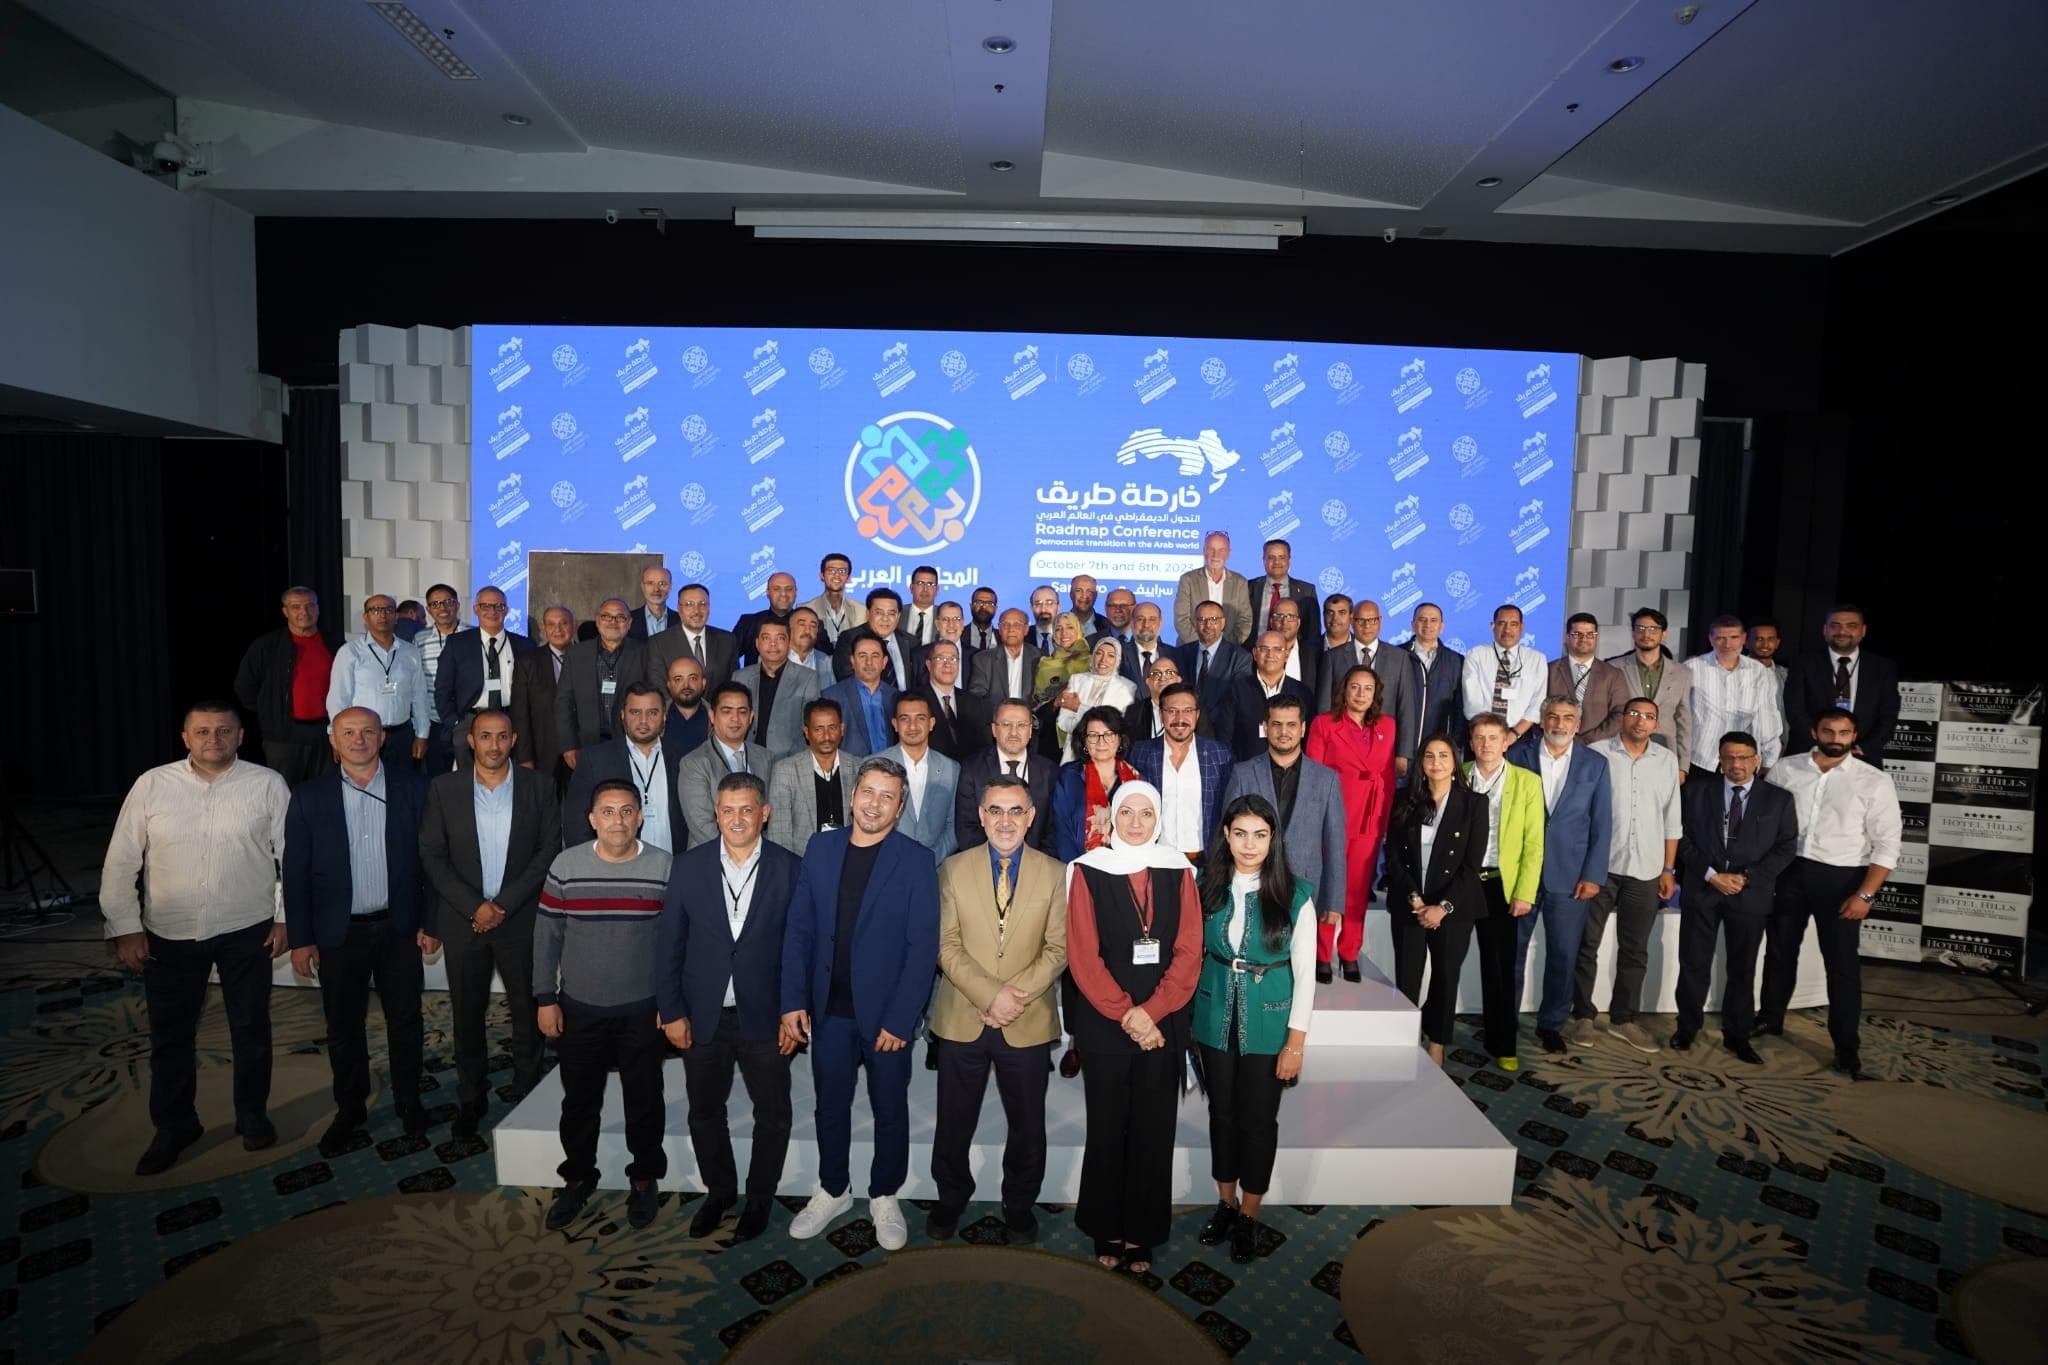 إختتام مؤتمر البوسنة الدولي بإعلان "شبكة الديمقراطيين العرب"